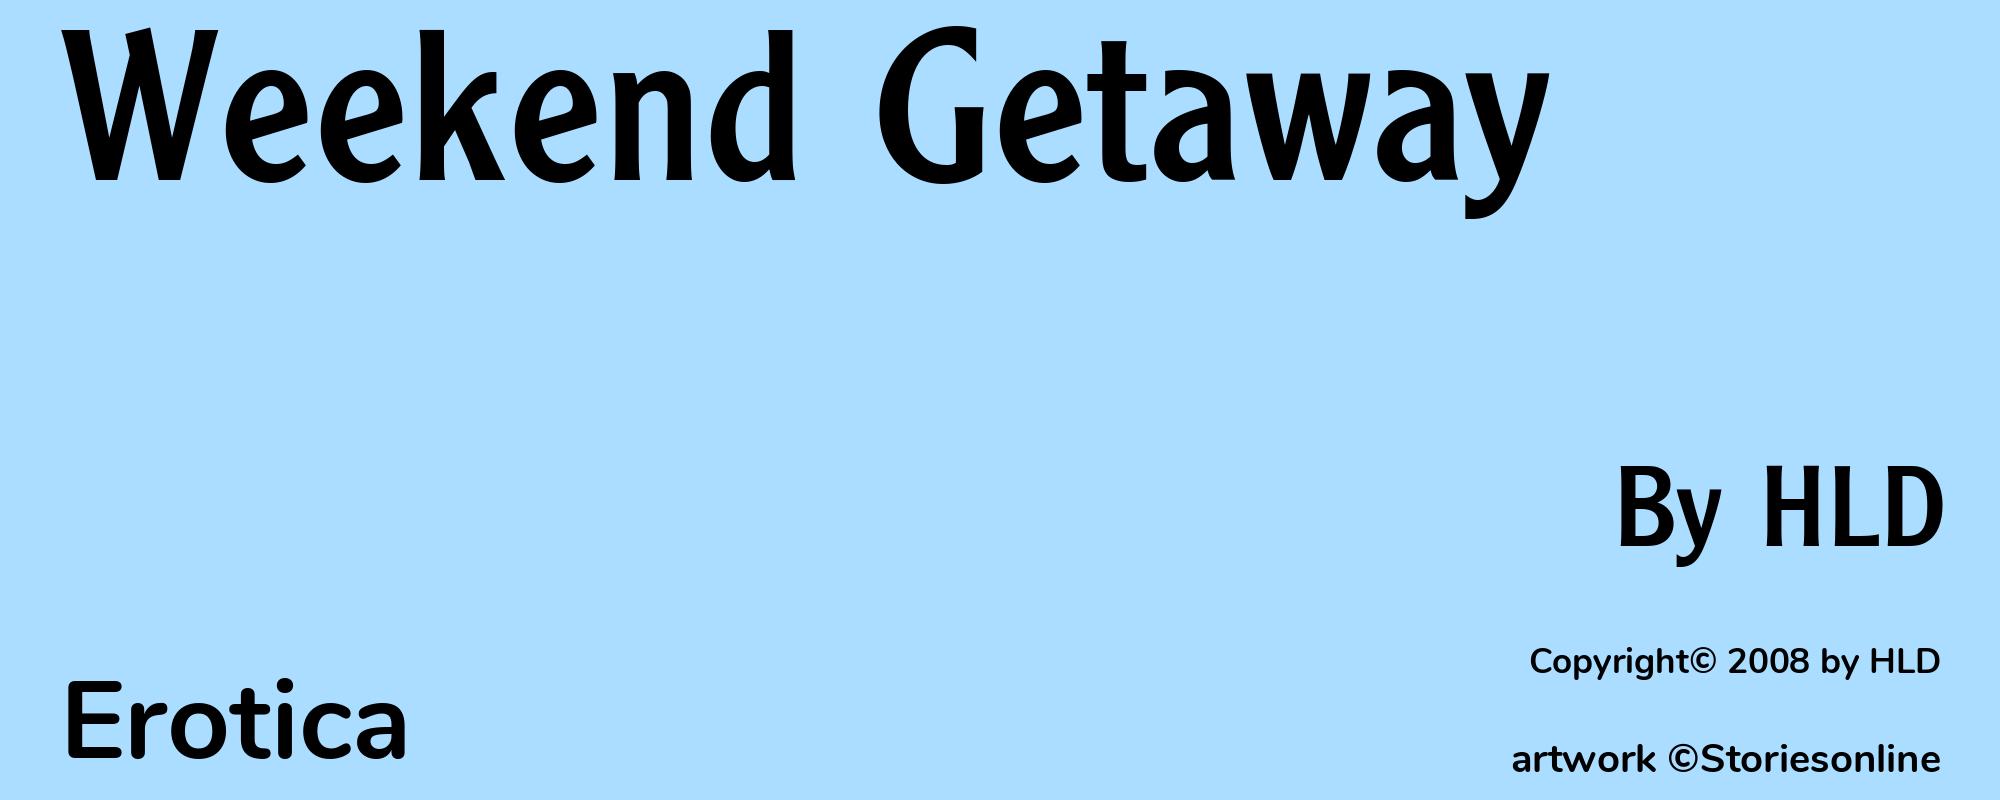 Weekend Getaway - Cover